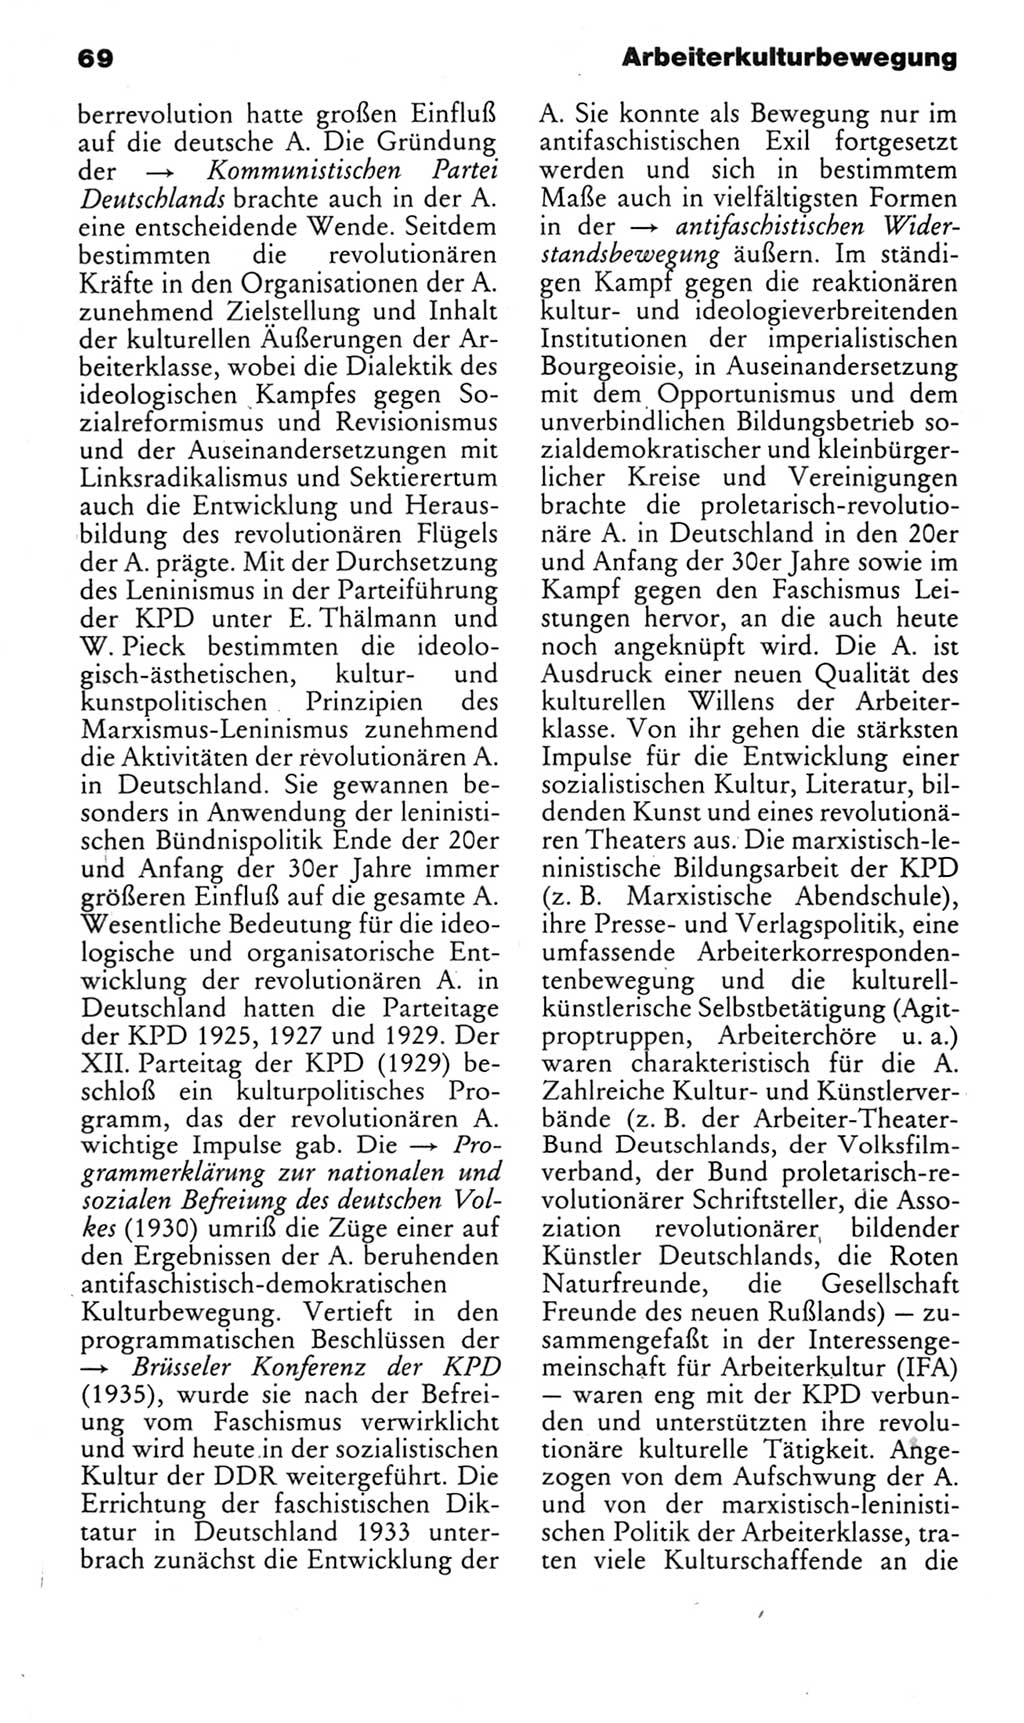 Kleines politisches Wörterbuch [Deutsche Demokratische Republik (DDR)] 1985, Seite 69 (Kl. pol. Wb. DDR 1985, S. 69)